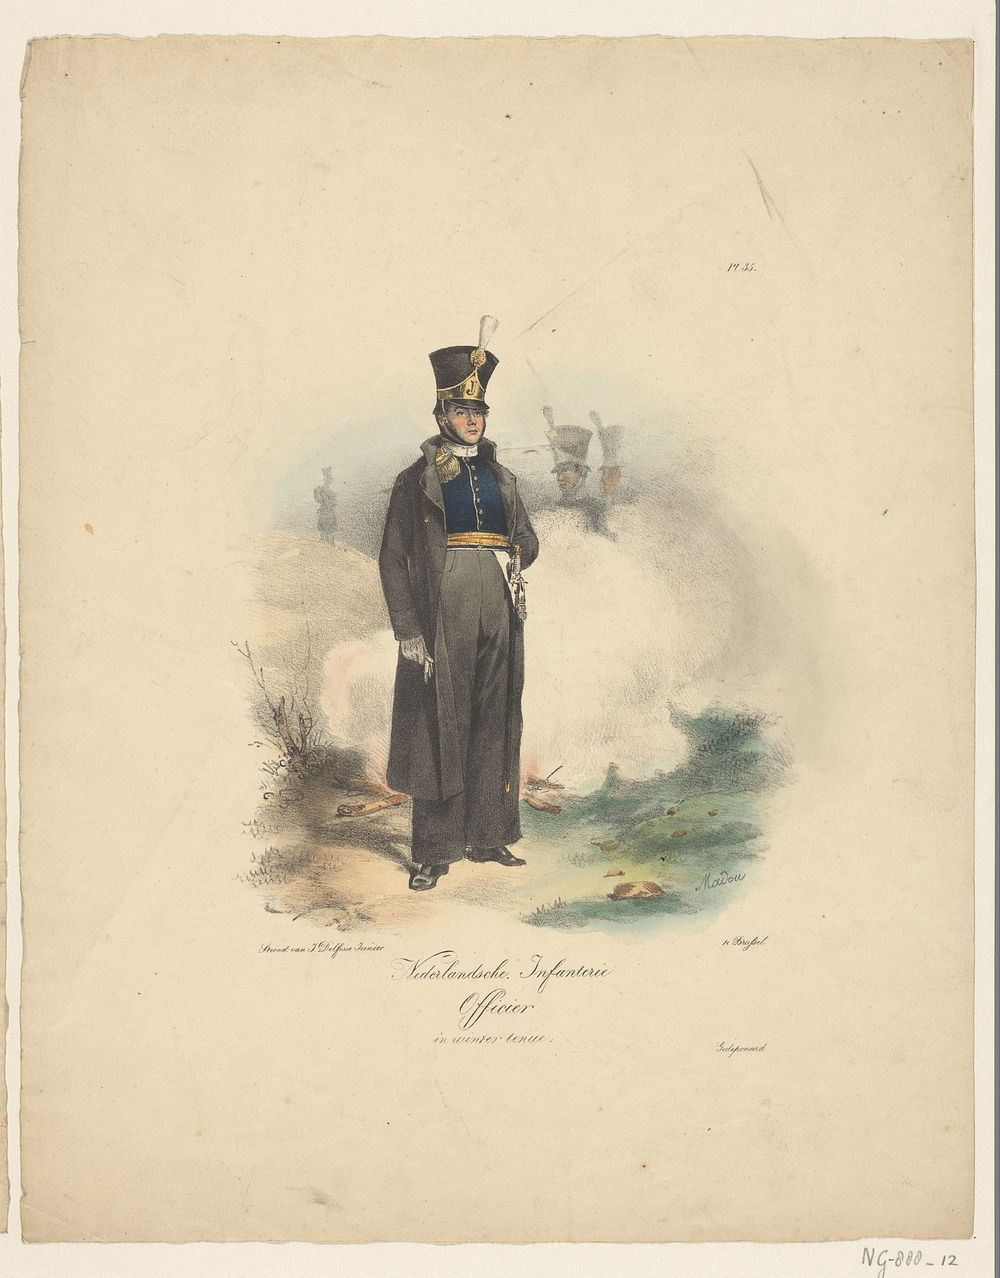 Nederlandsche Infanterie / Officier in winter tenue (1823 - 1827) by Jean Baptiste Madou and J Delfosse